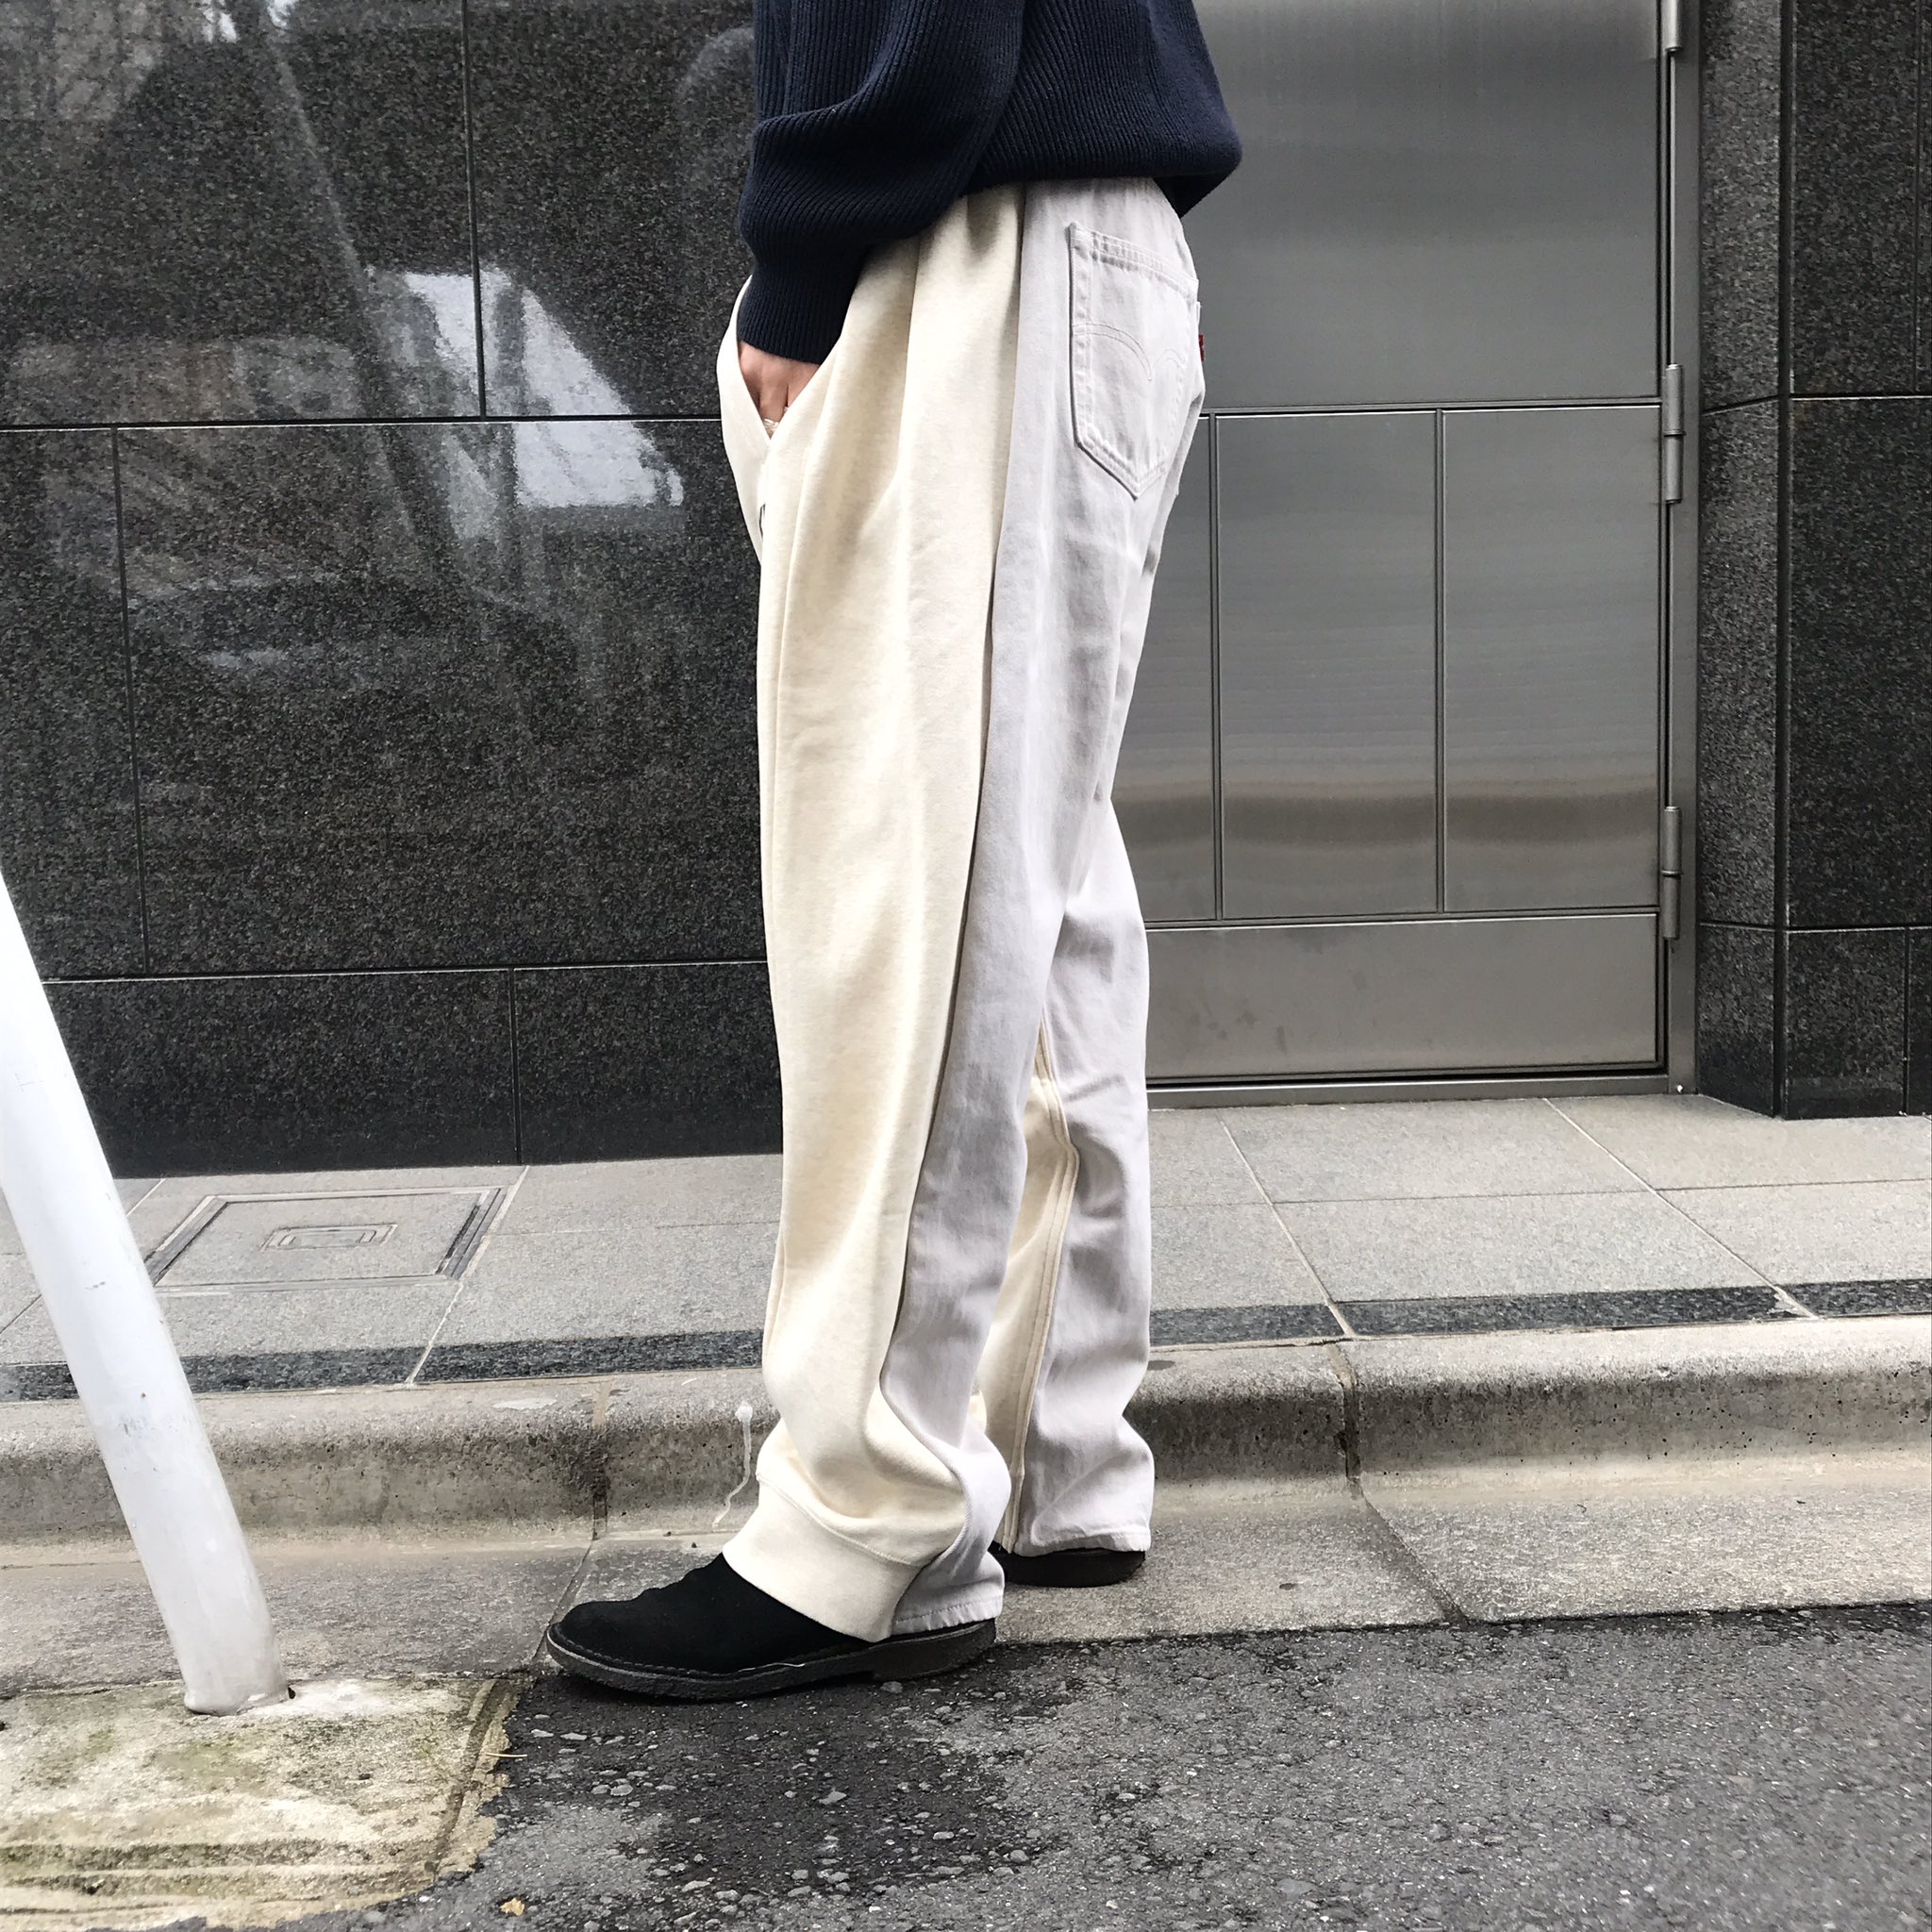 日本店舗 BLESS × Levi's パンツ デニム/ジーンズ